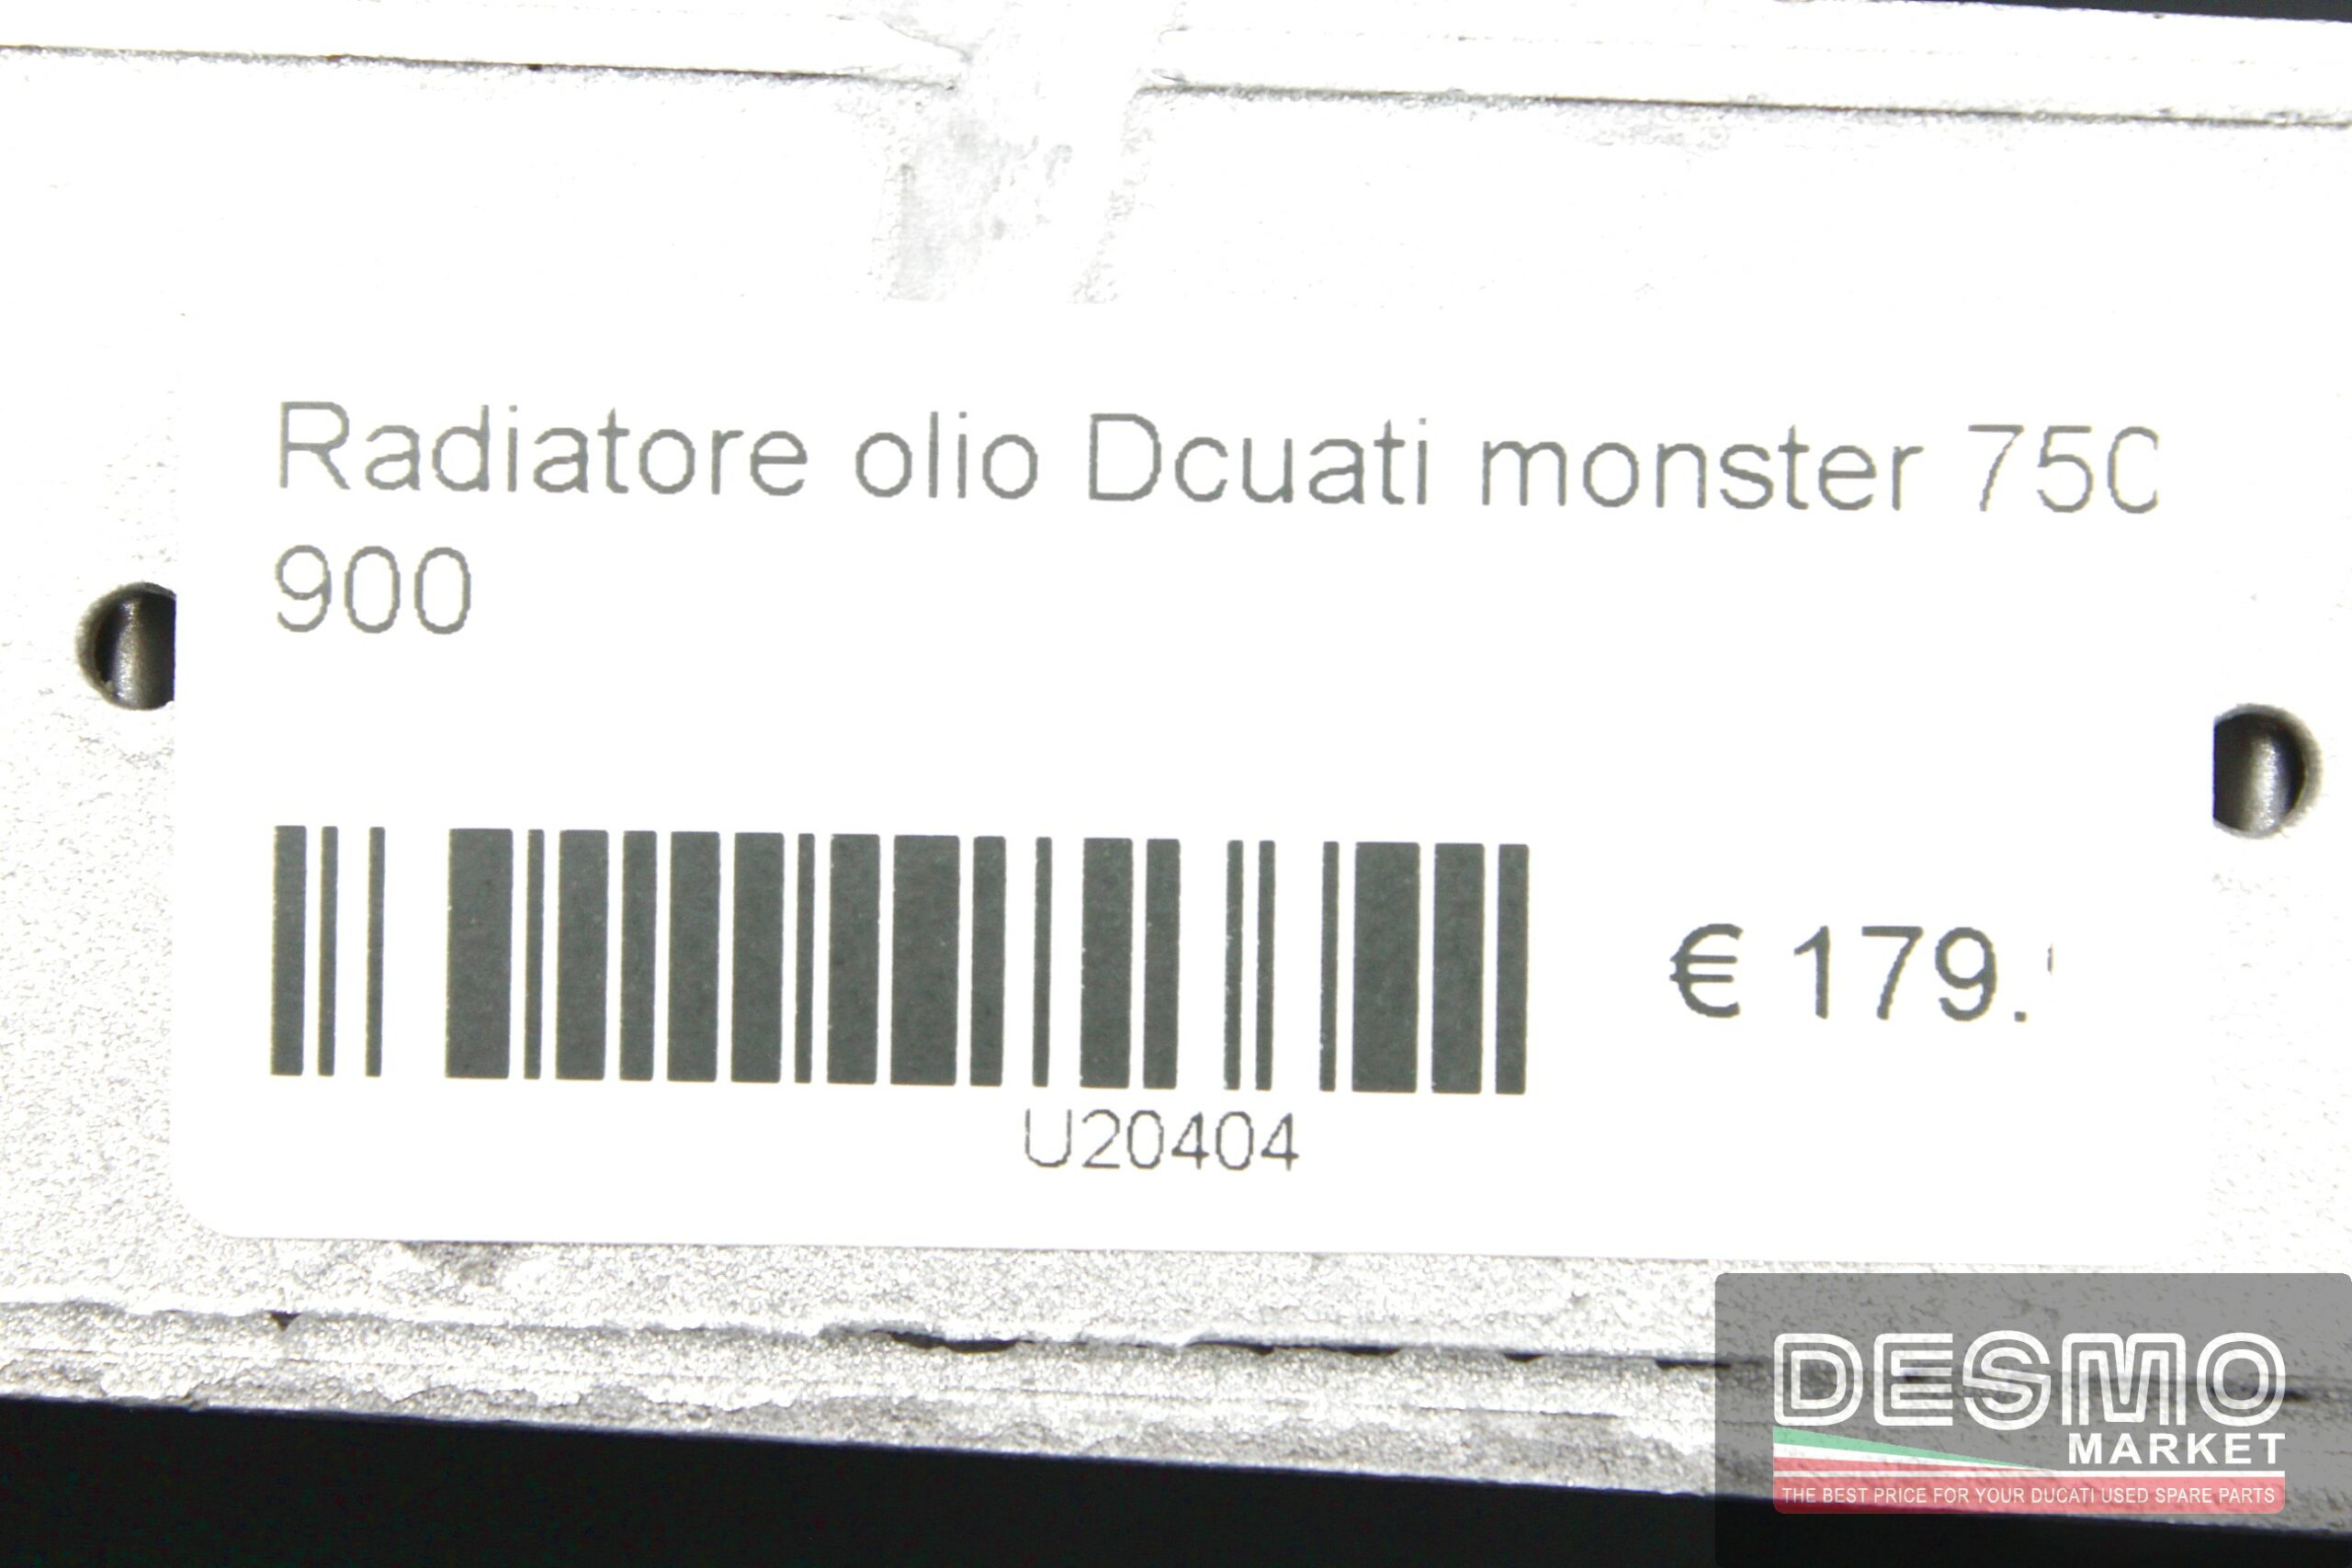 Radiatore olio Ducati monster 750 900